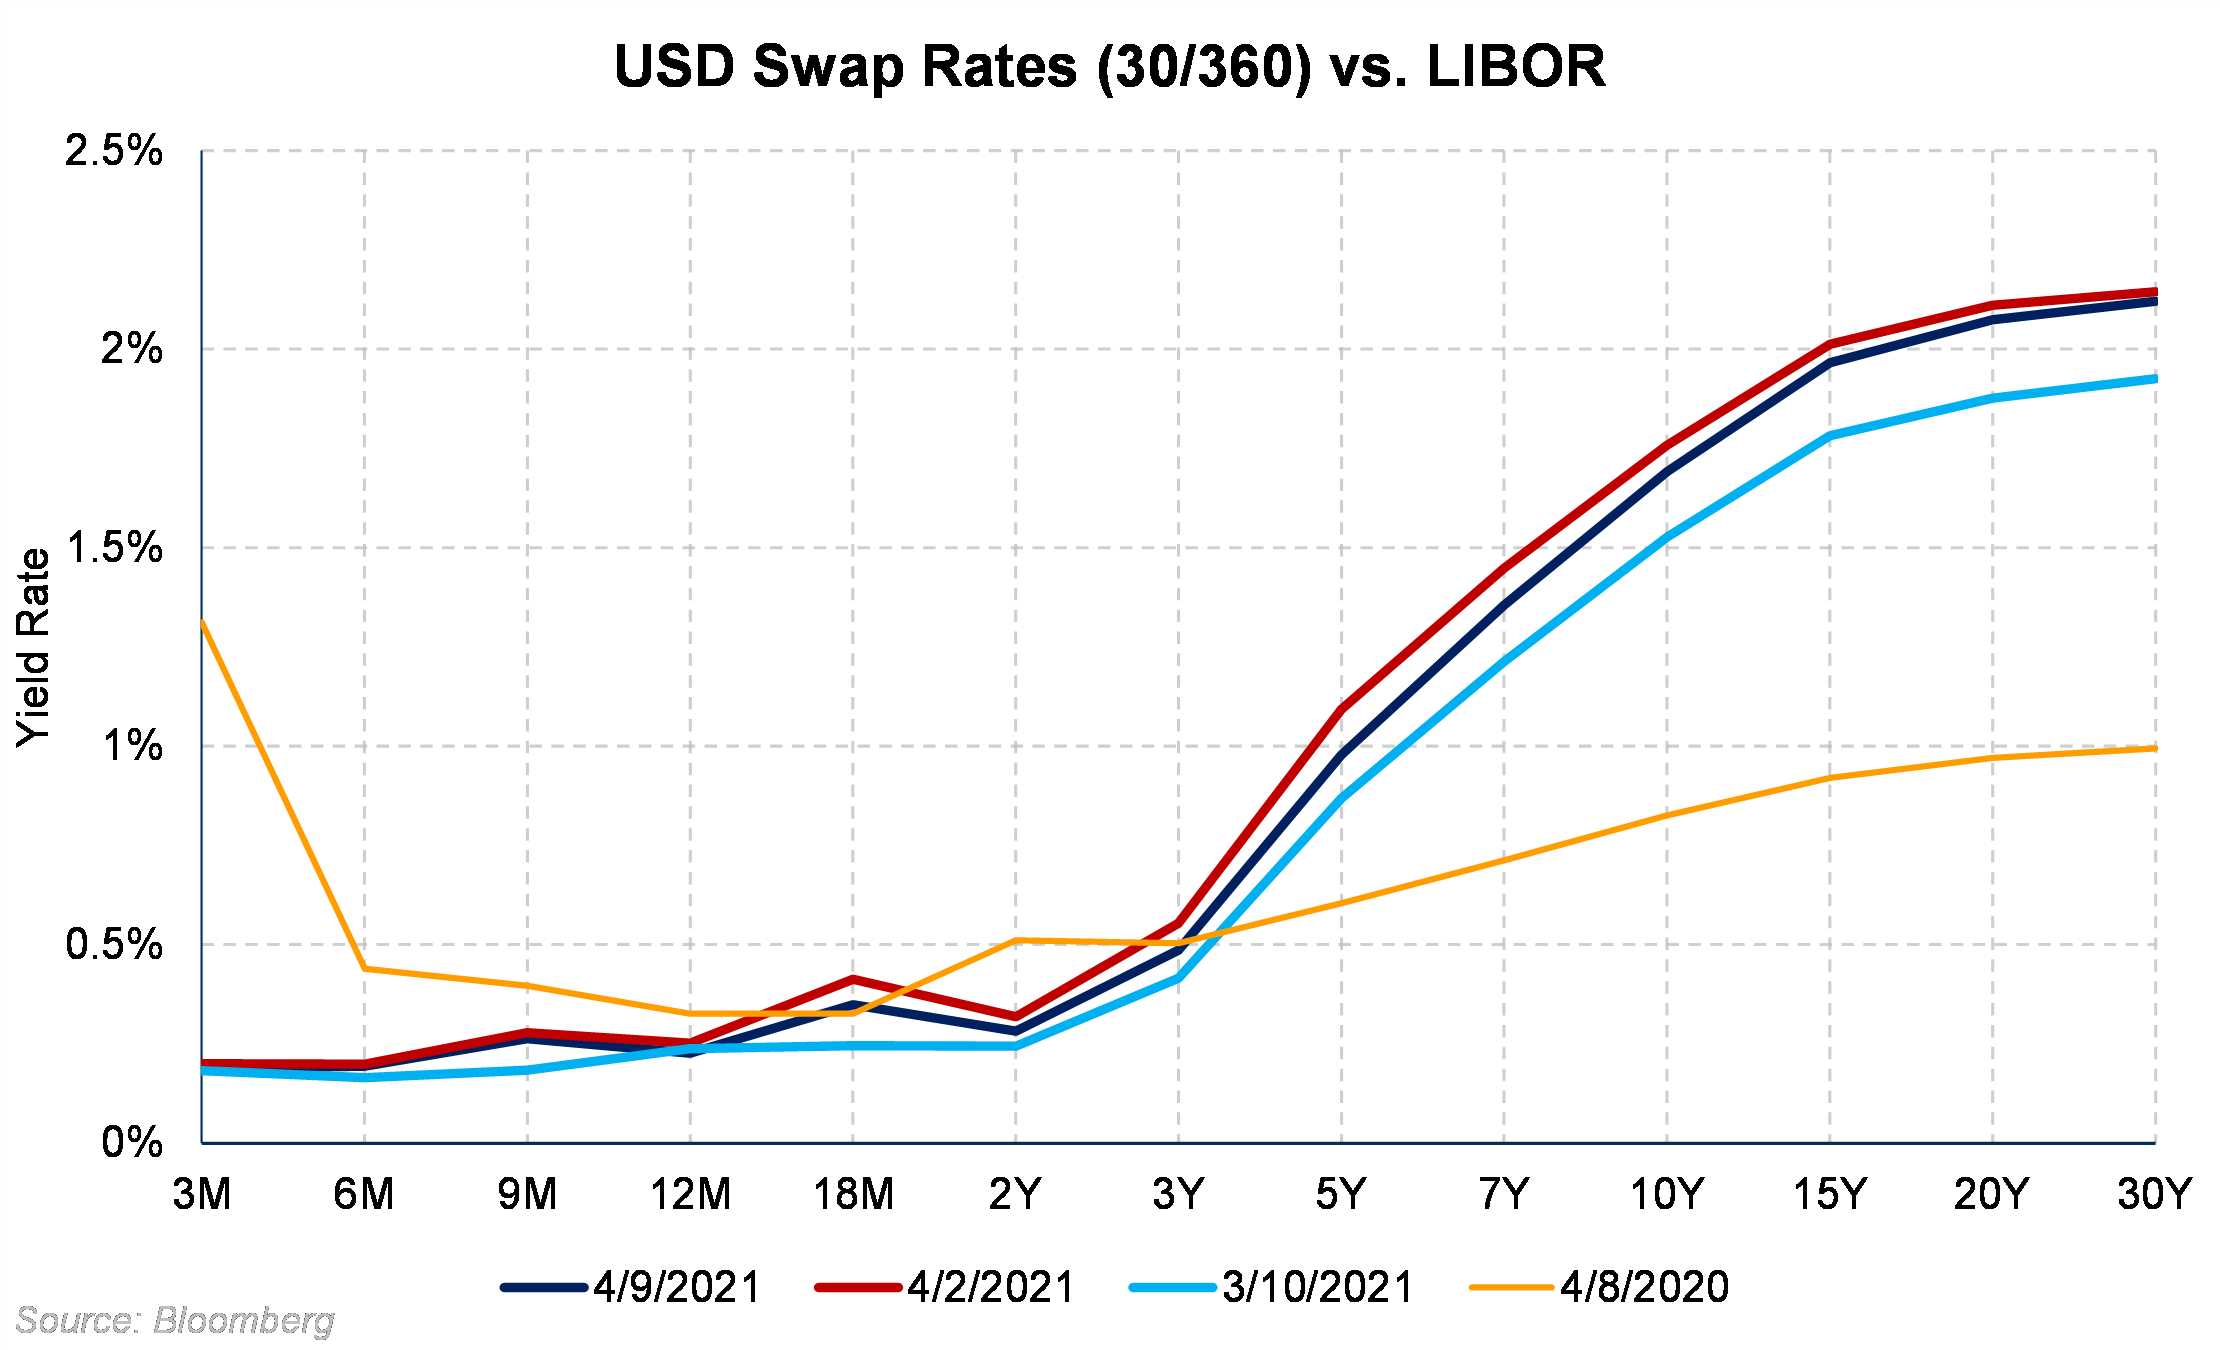 USD Swap Rates vs LIBOR